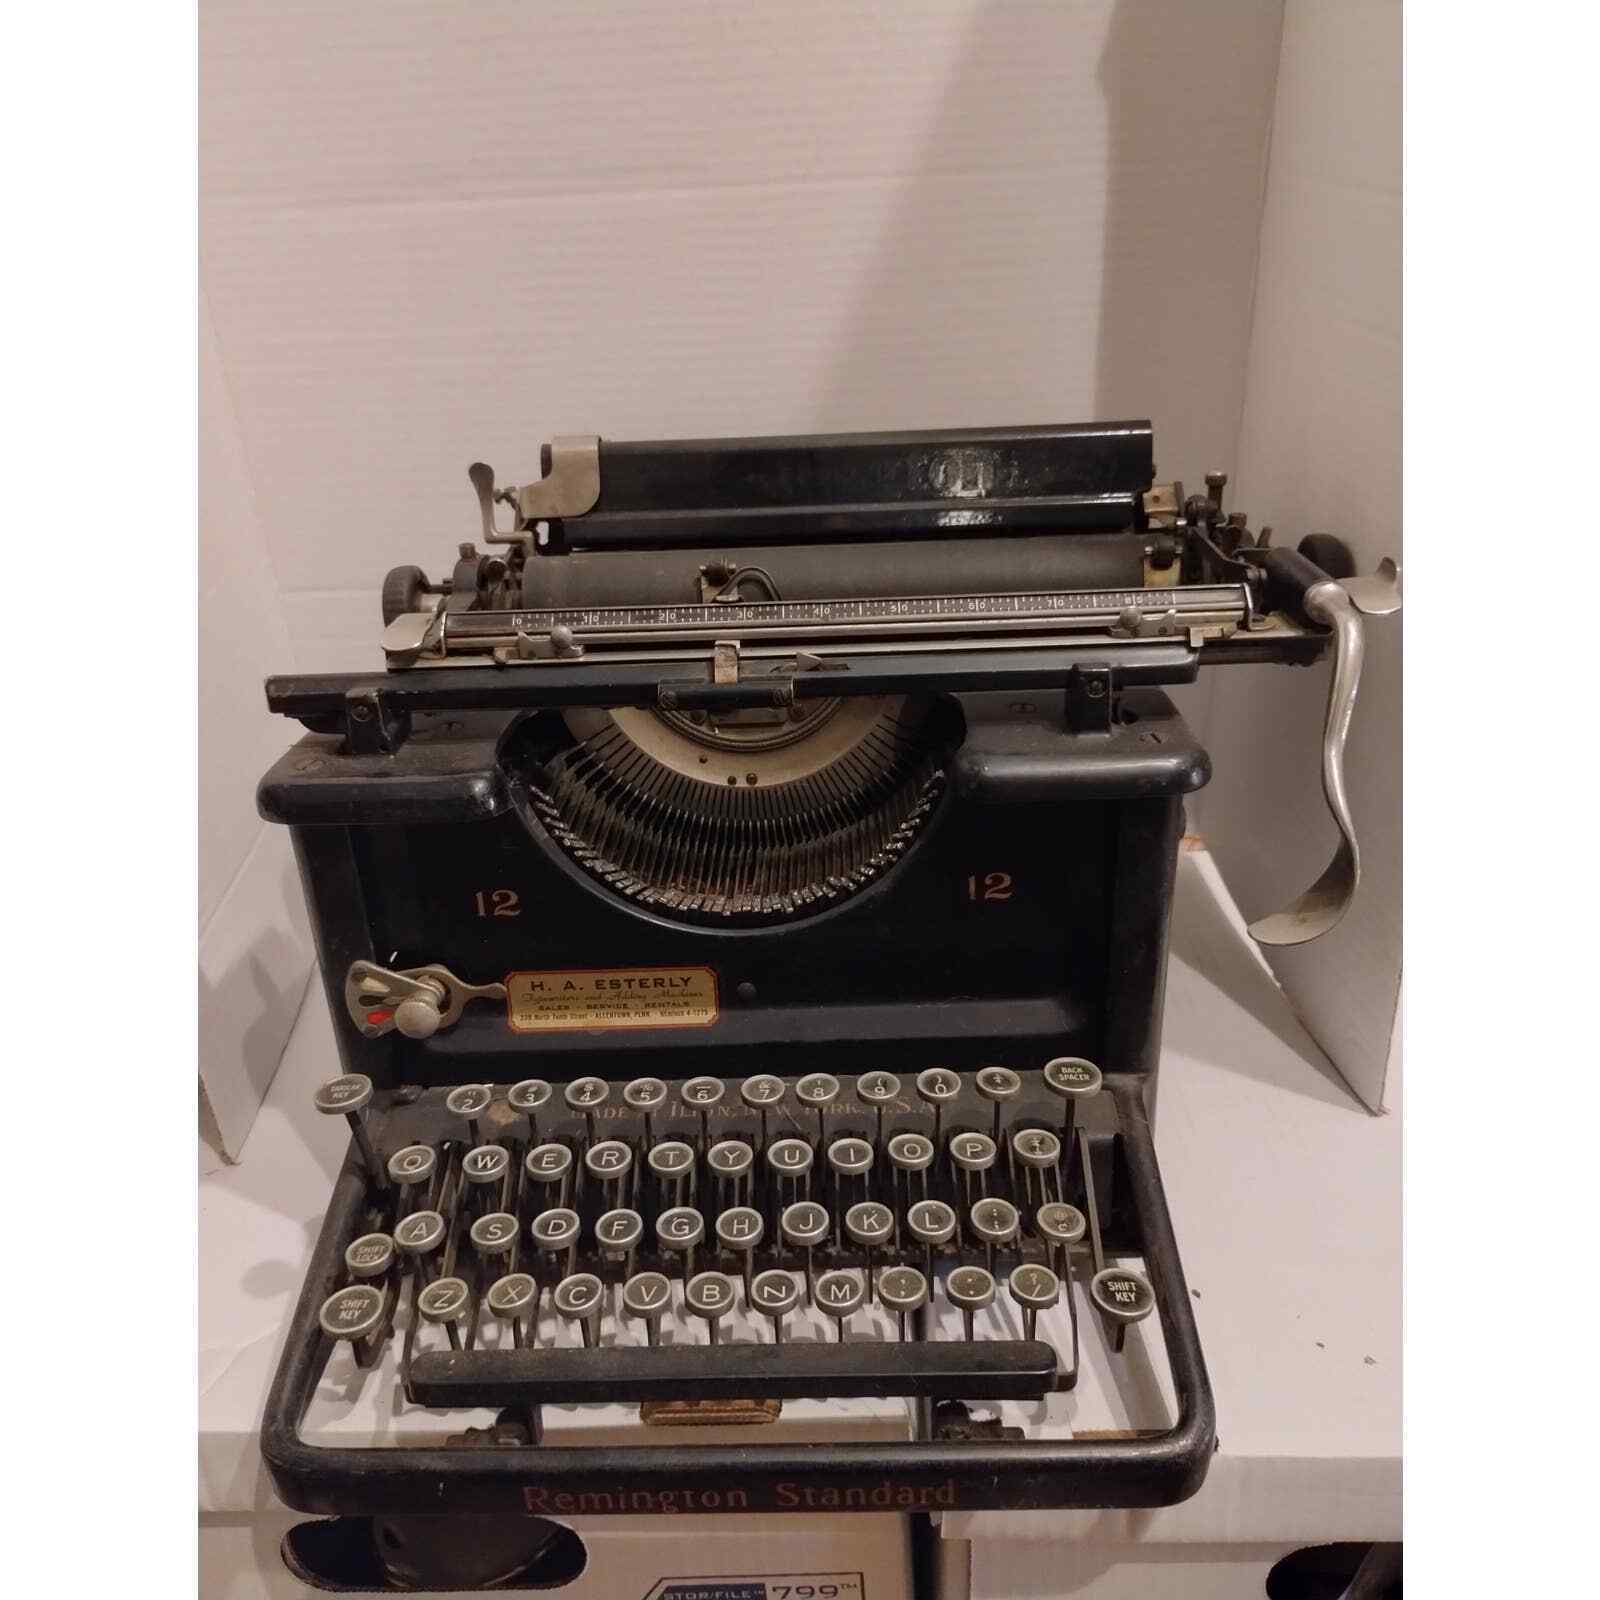 Antique Remington Standard Typewriter #12 Serial: LS54391